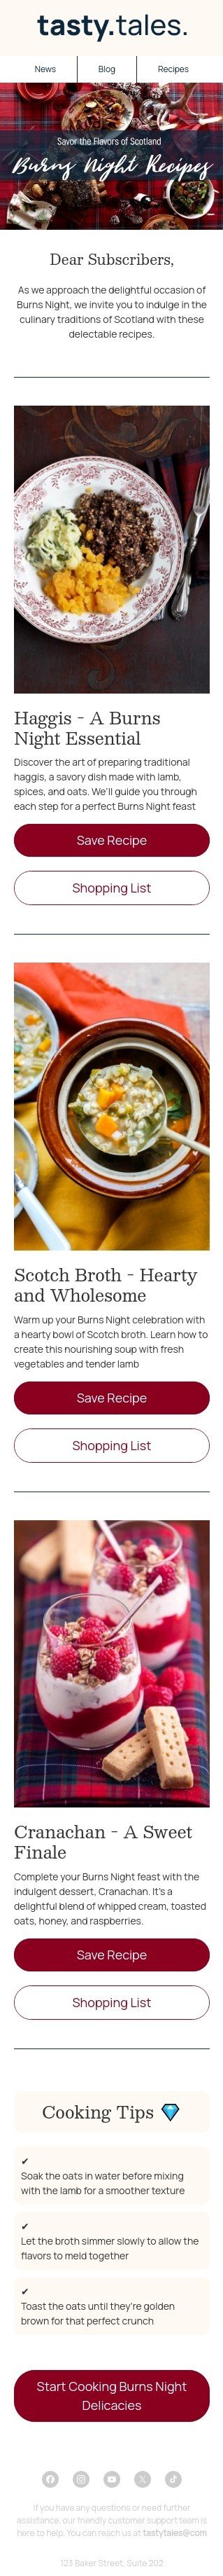 Plantilla de correo electrónico «Recetas de Noche de Burns» de Noche de Burns para la industria de gastronomía Vista de móvil